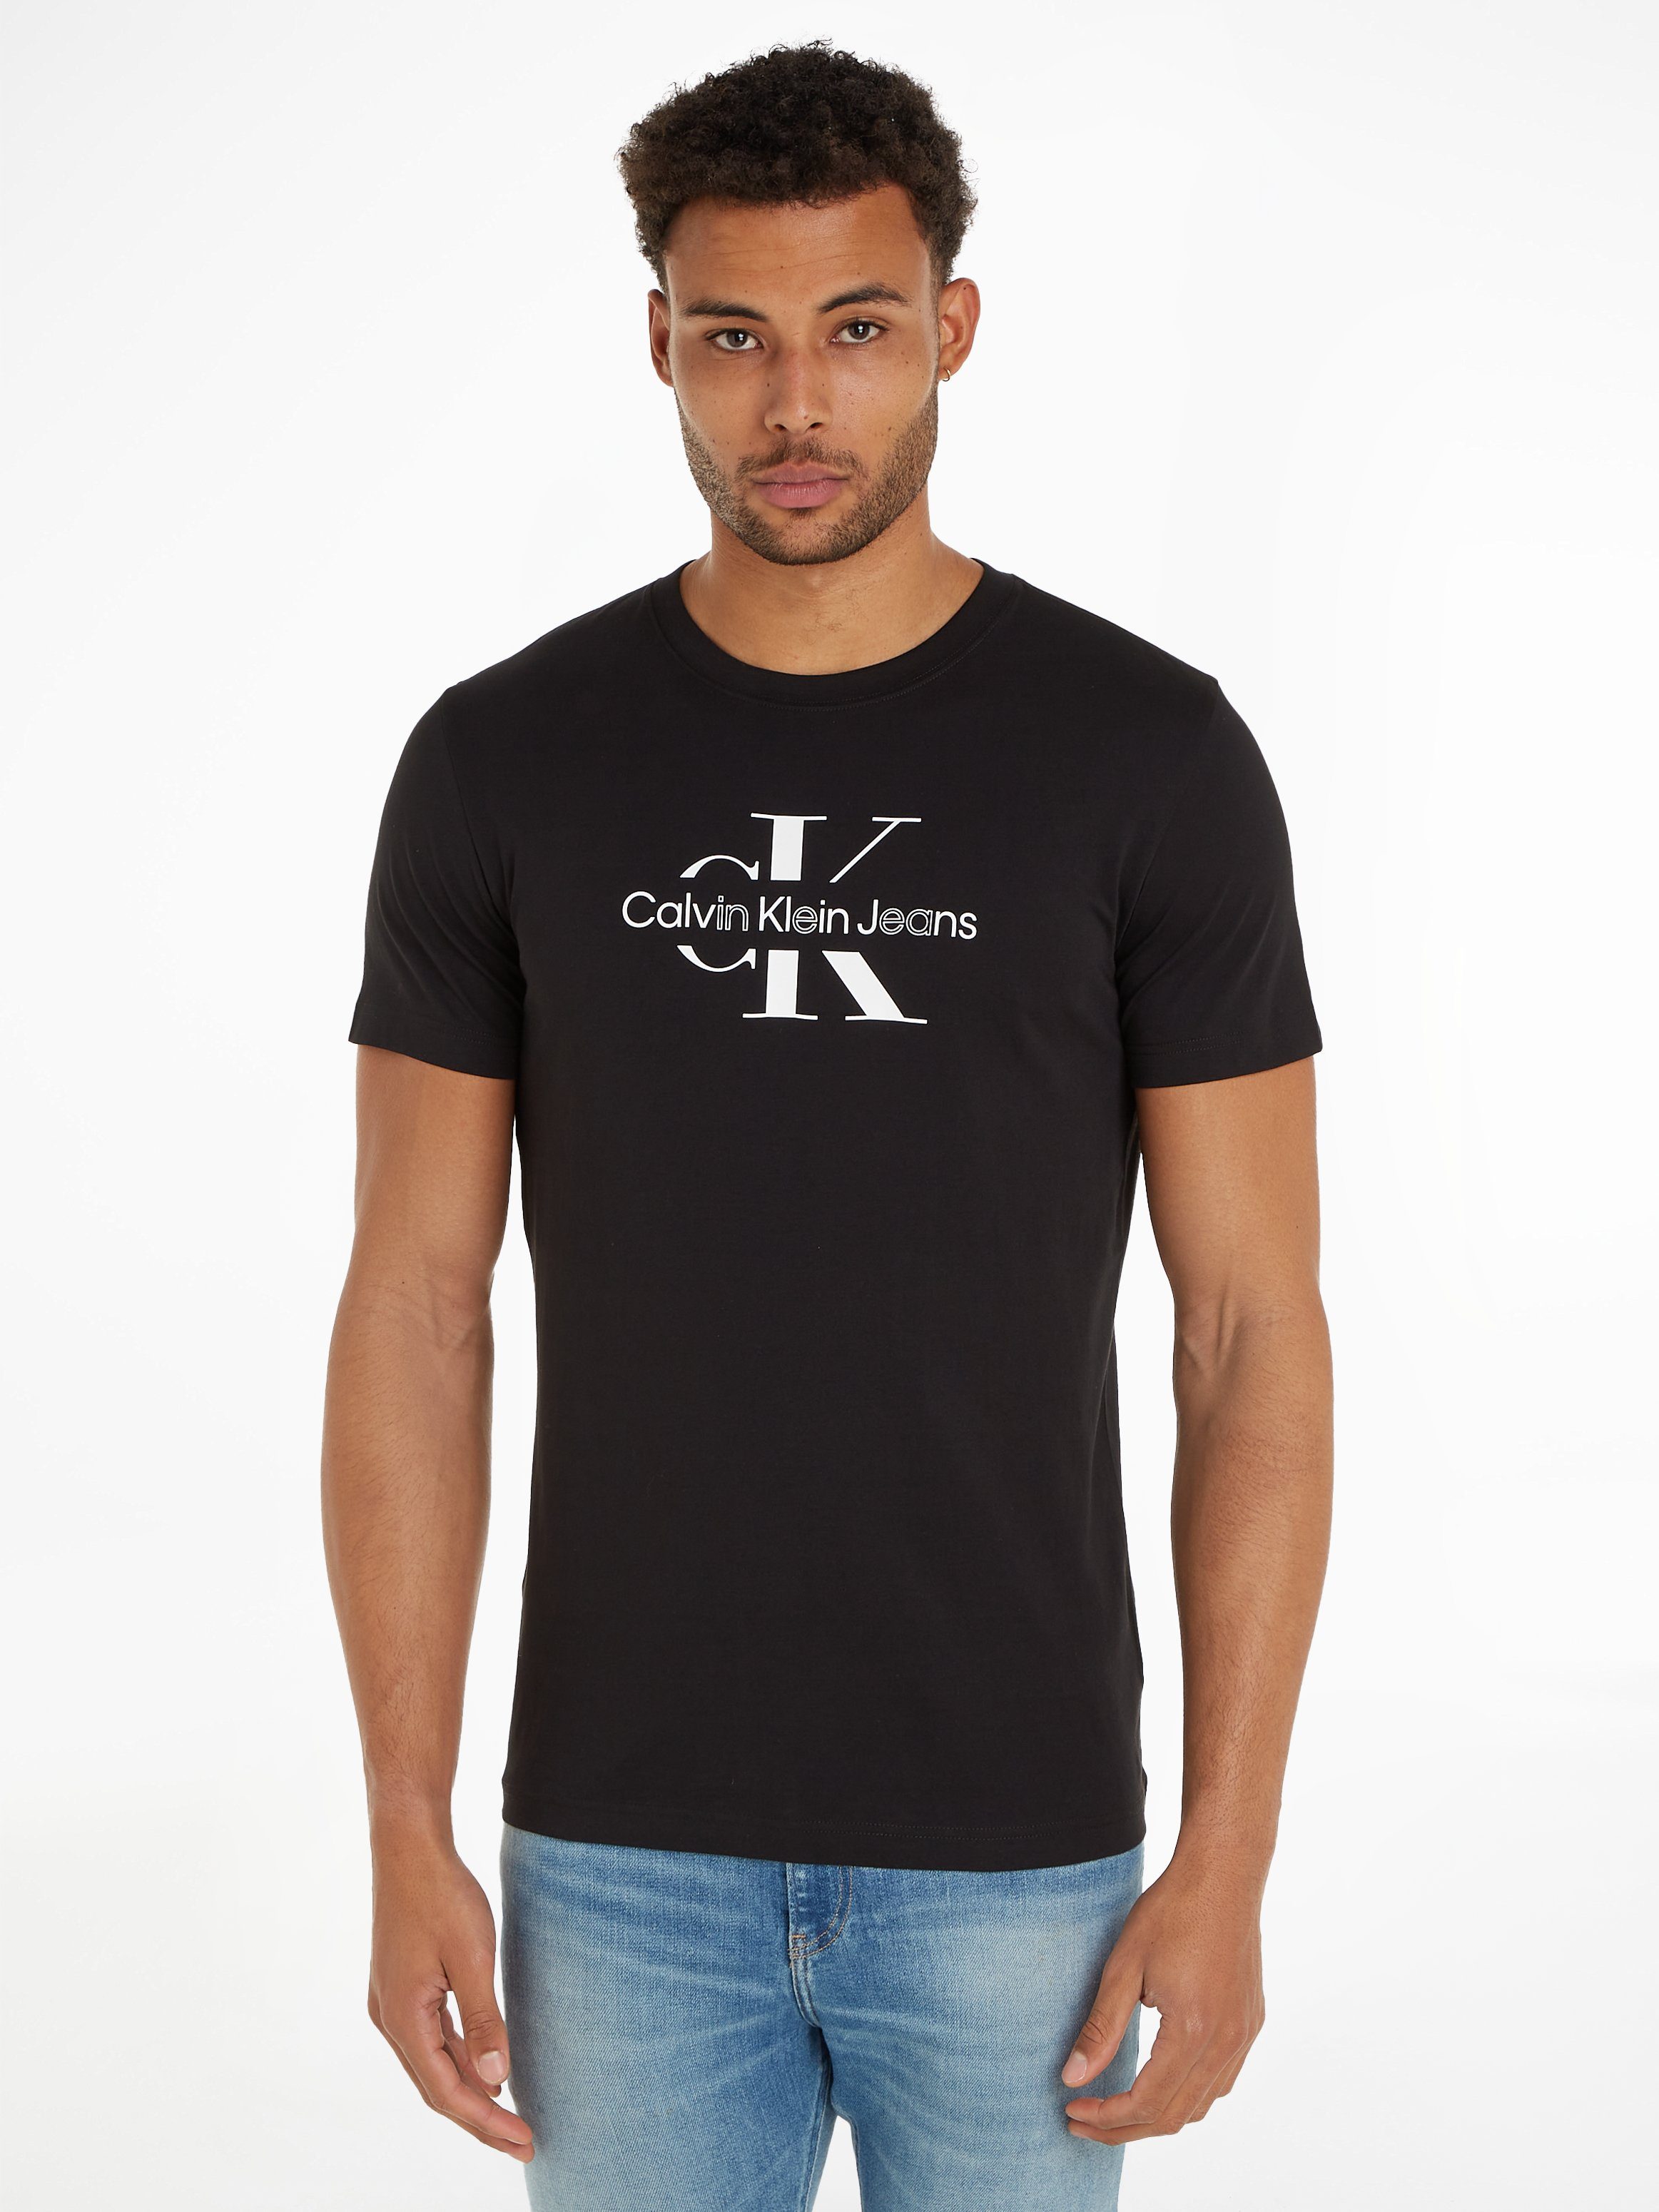 Calvin Klein Jeans Outline Monologo T-Shirt Black Heren